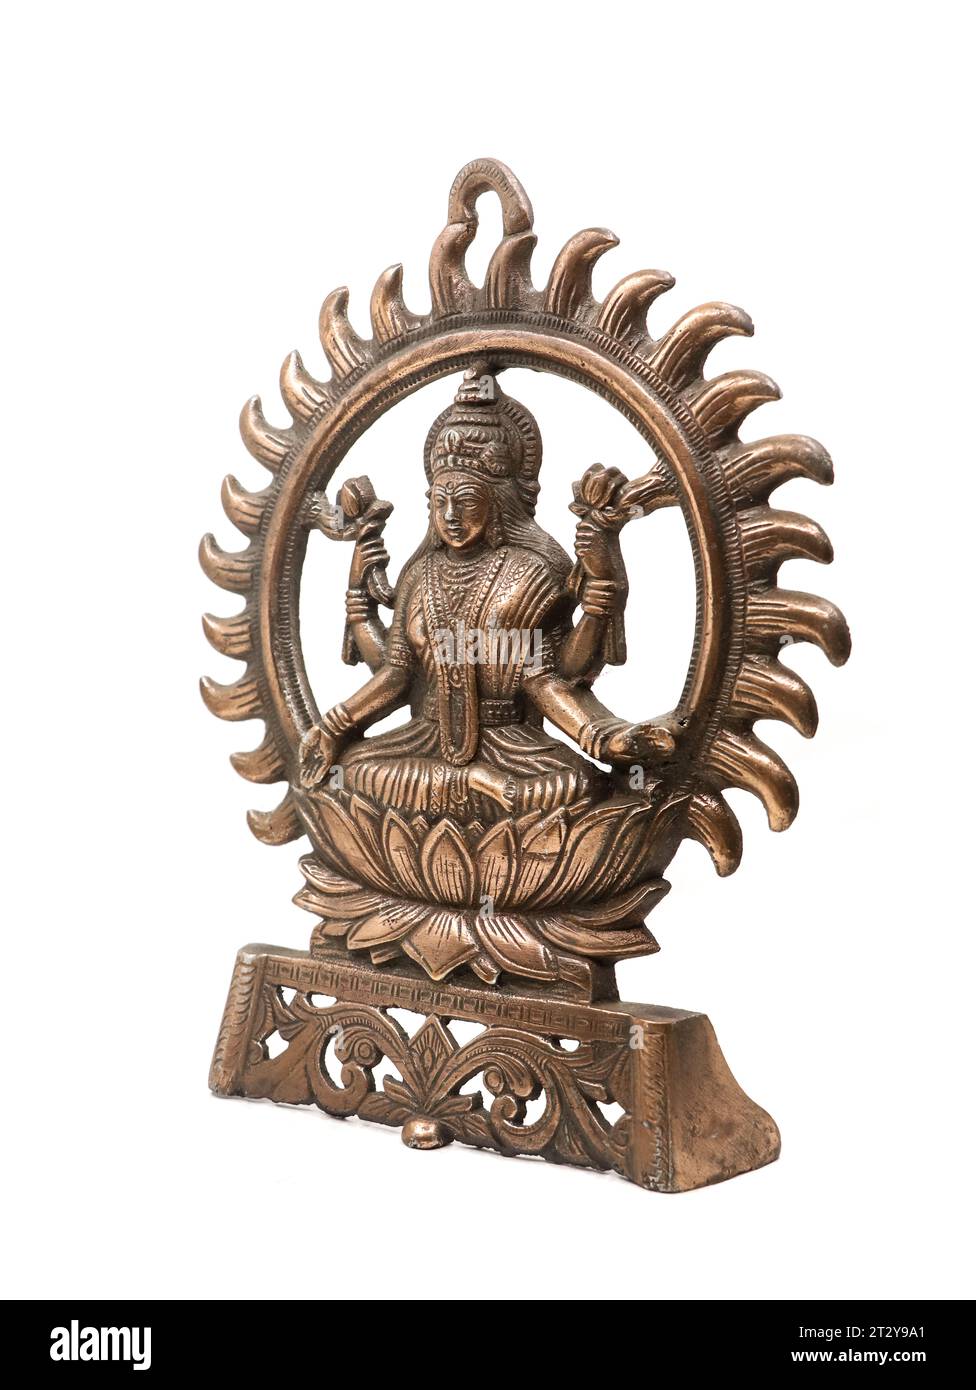 idolo di rame della dea lakshmi della religione indù con braccia multiple seduto in un fiore di loto circondato dai raggi del sole, isolato Foto Stock